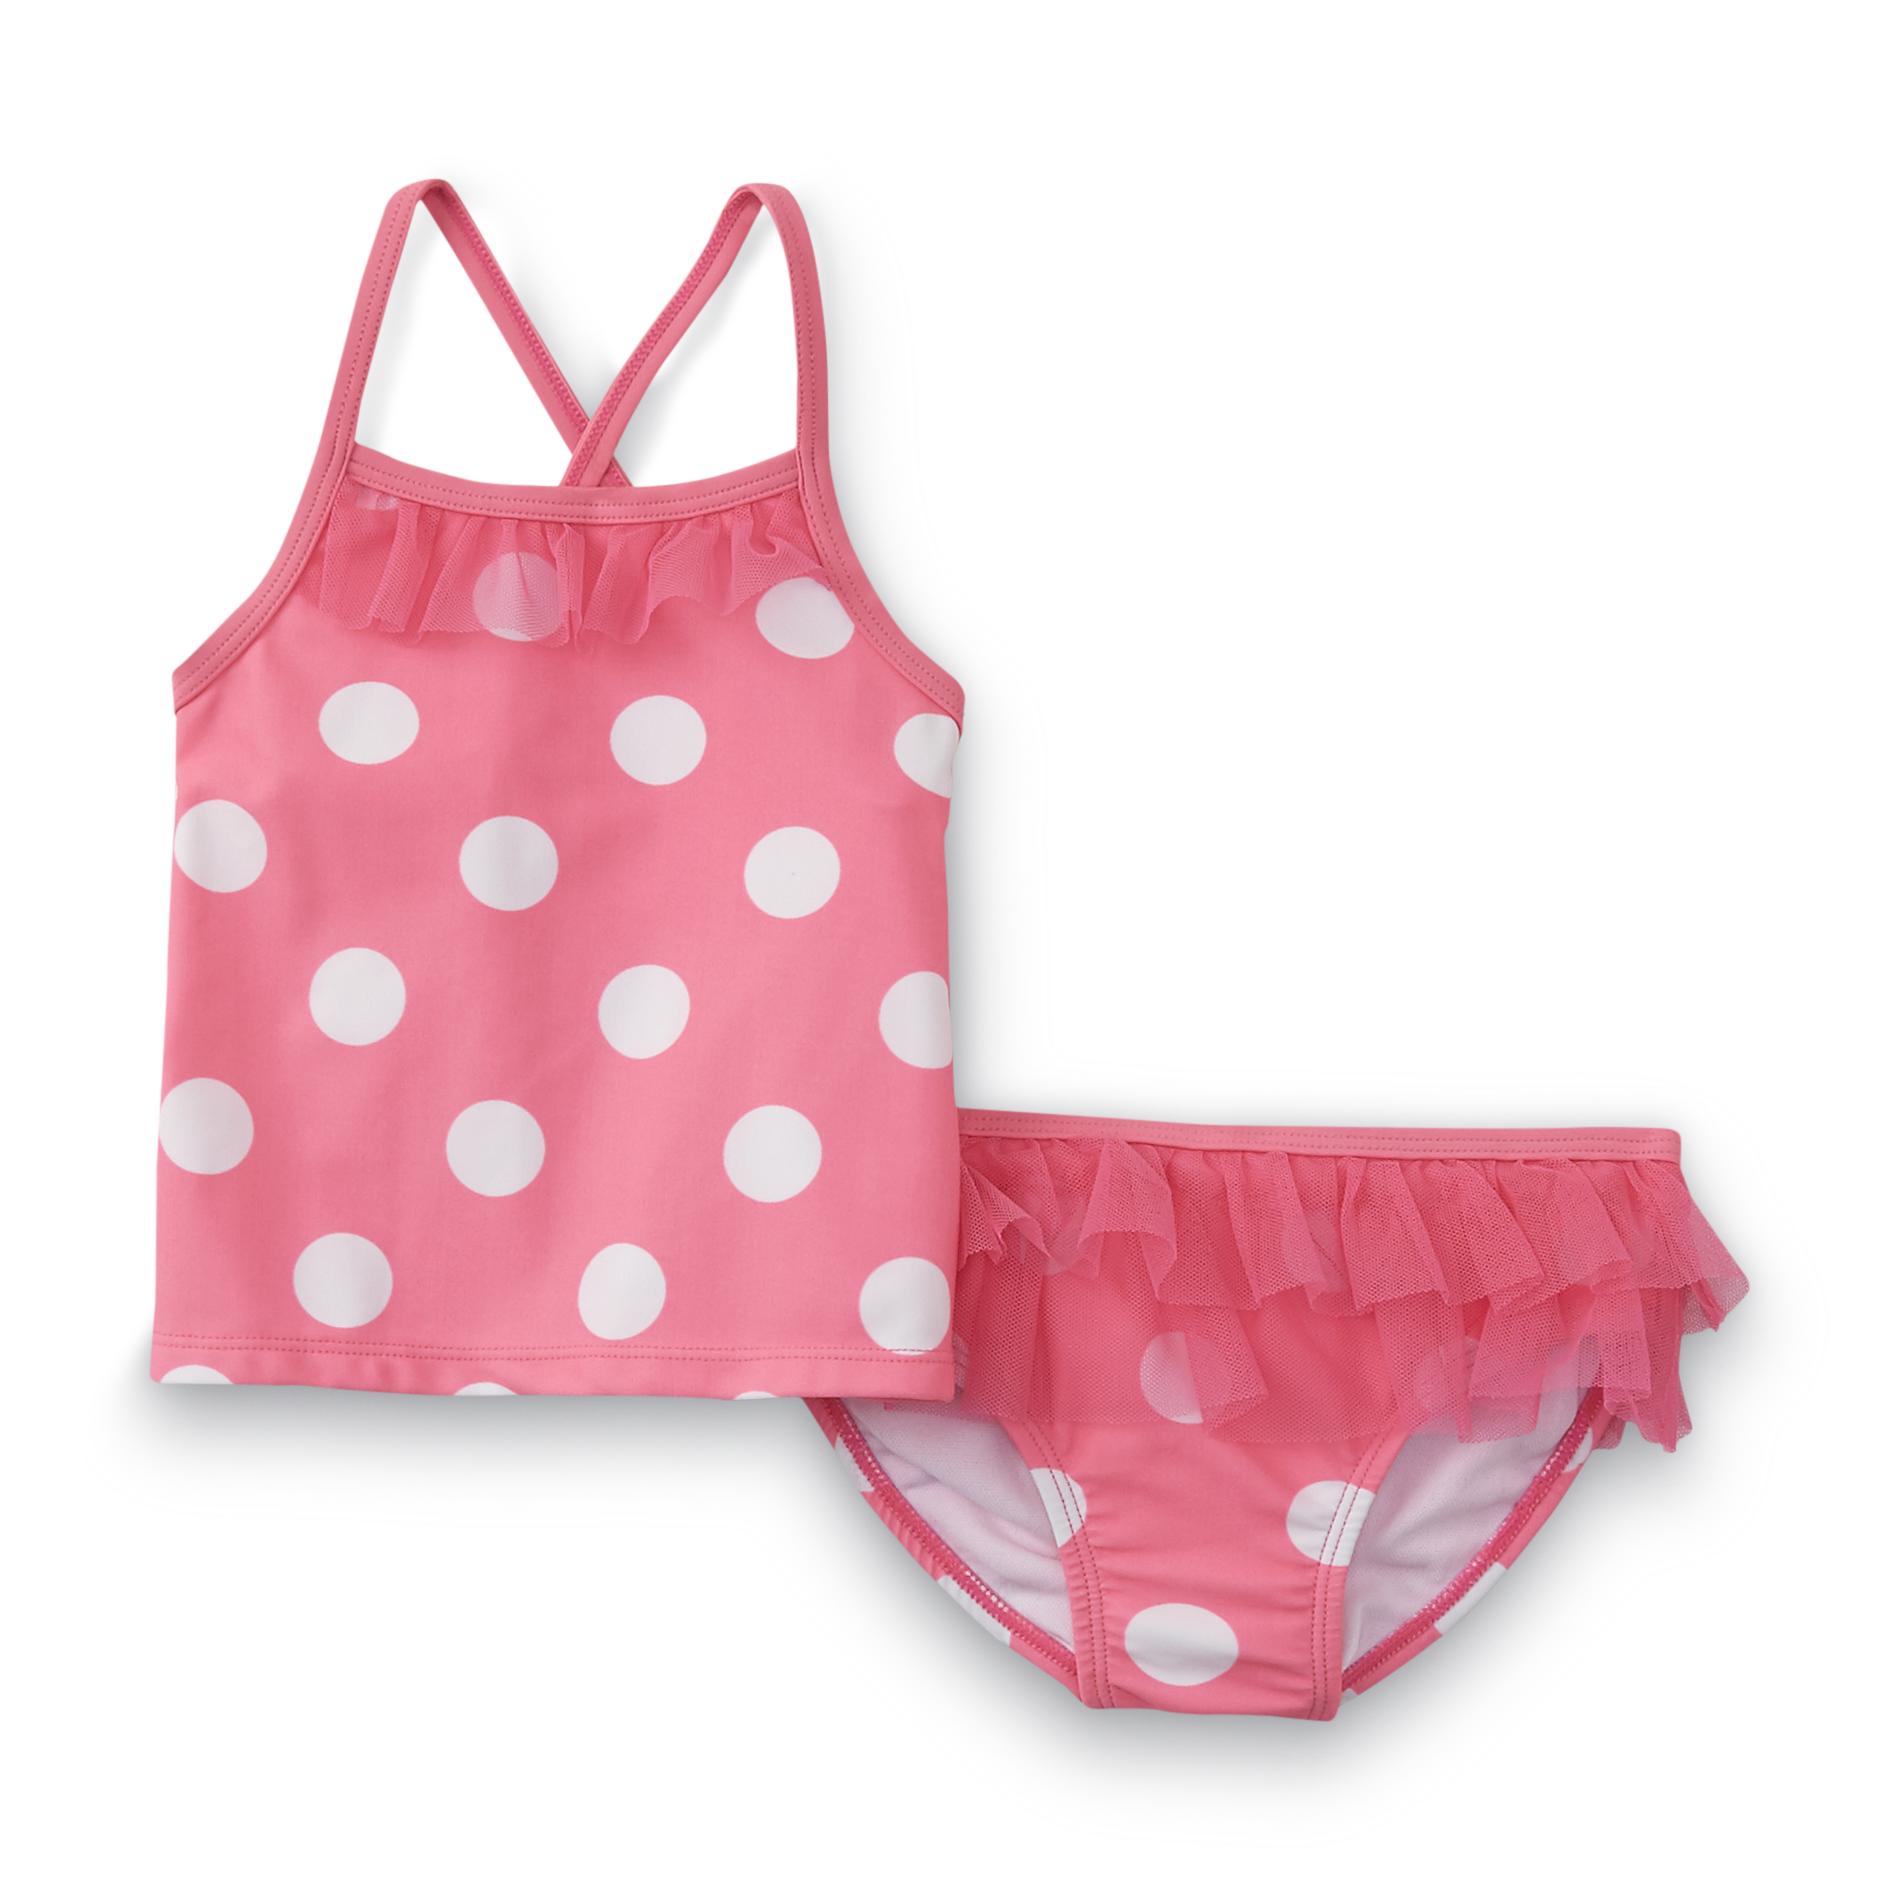 Infant & Toddler Girl's Tankini Top & Bikini Bottoms - Polka Dot